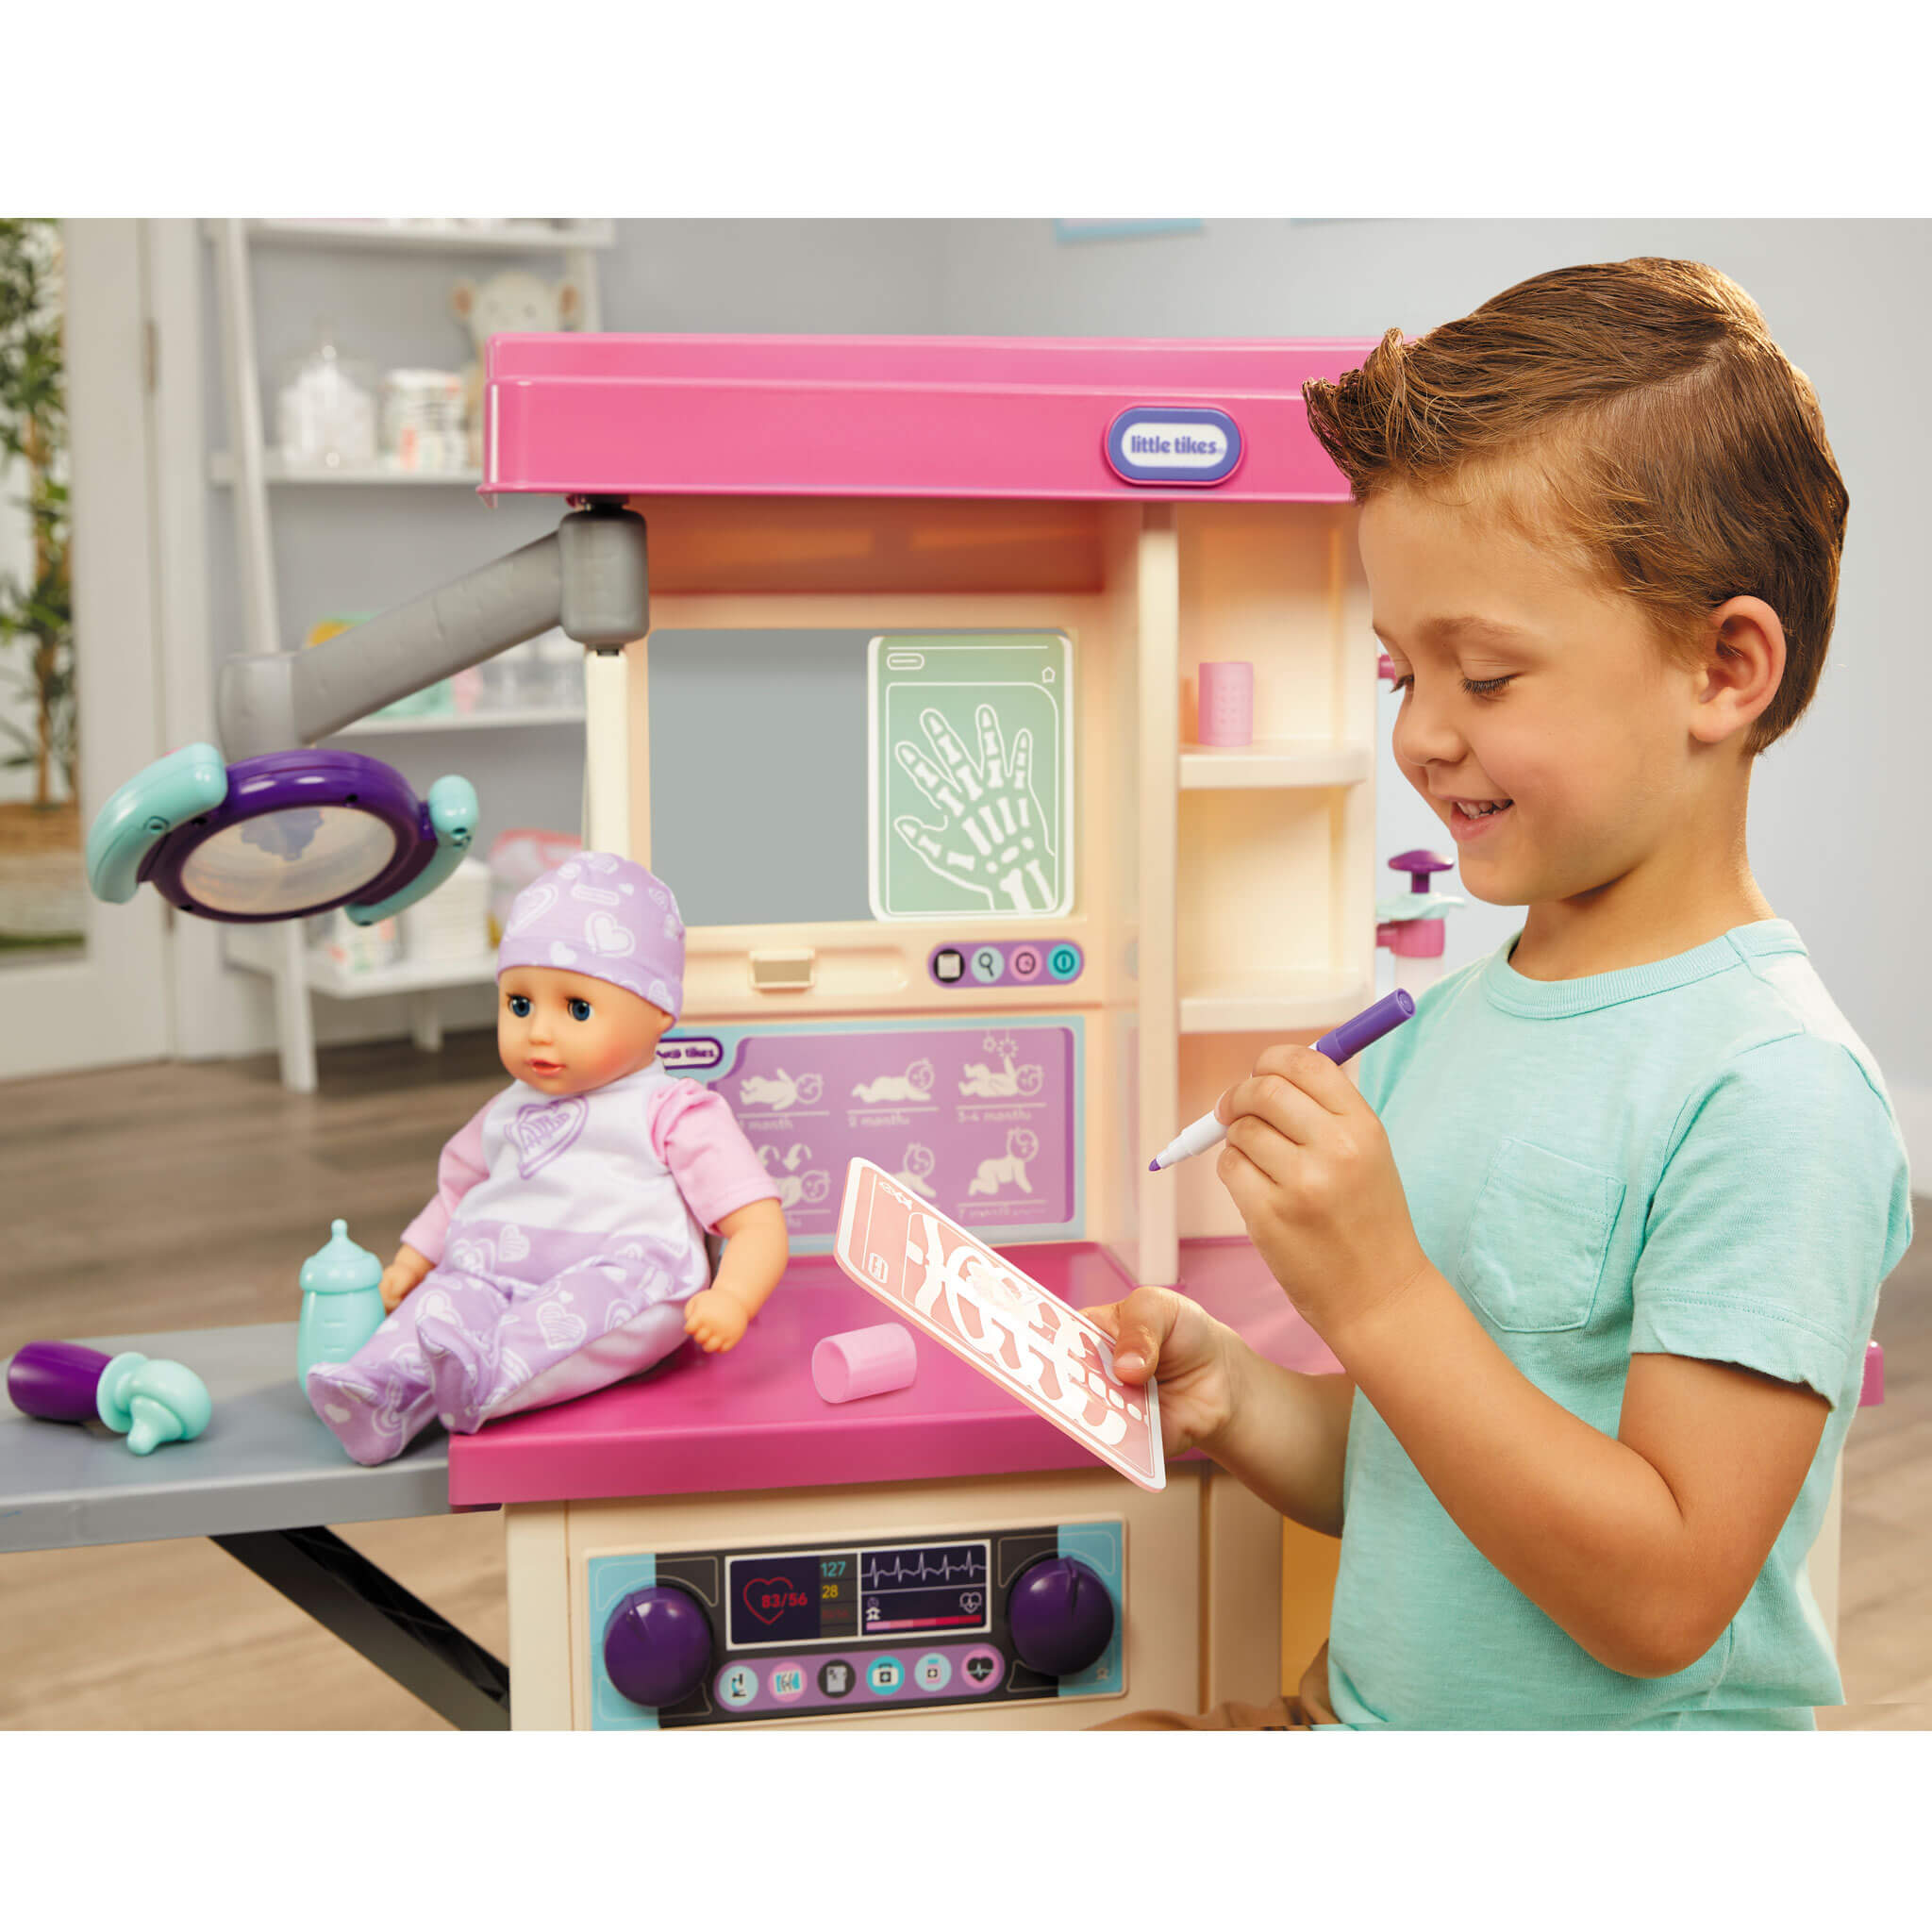 Premier frigo Little Tikes : appareil de jeu réaliste pour les enfants 